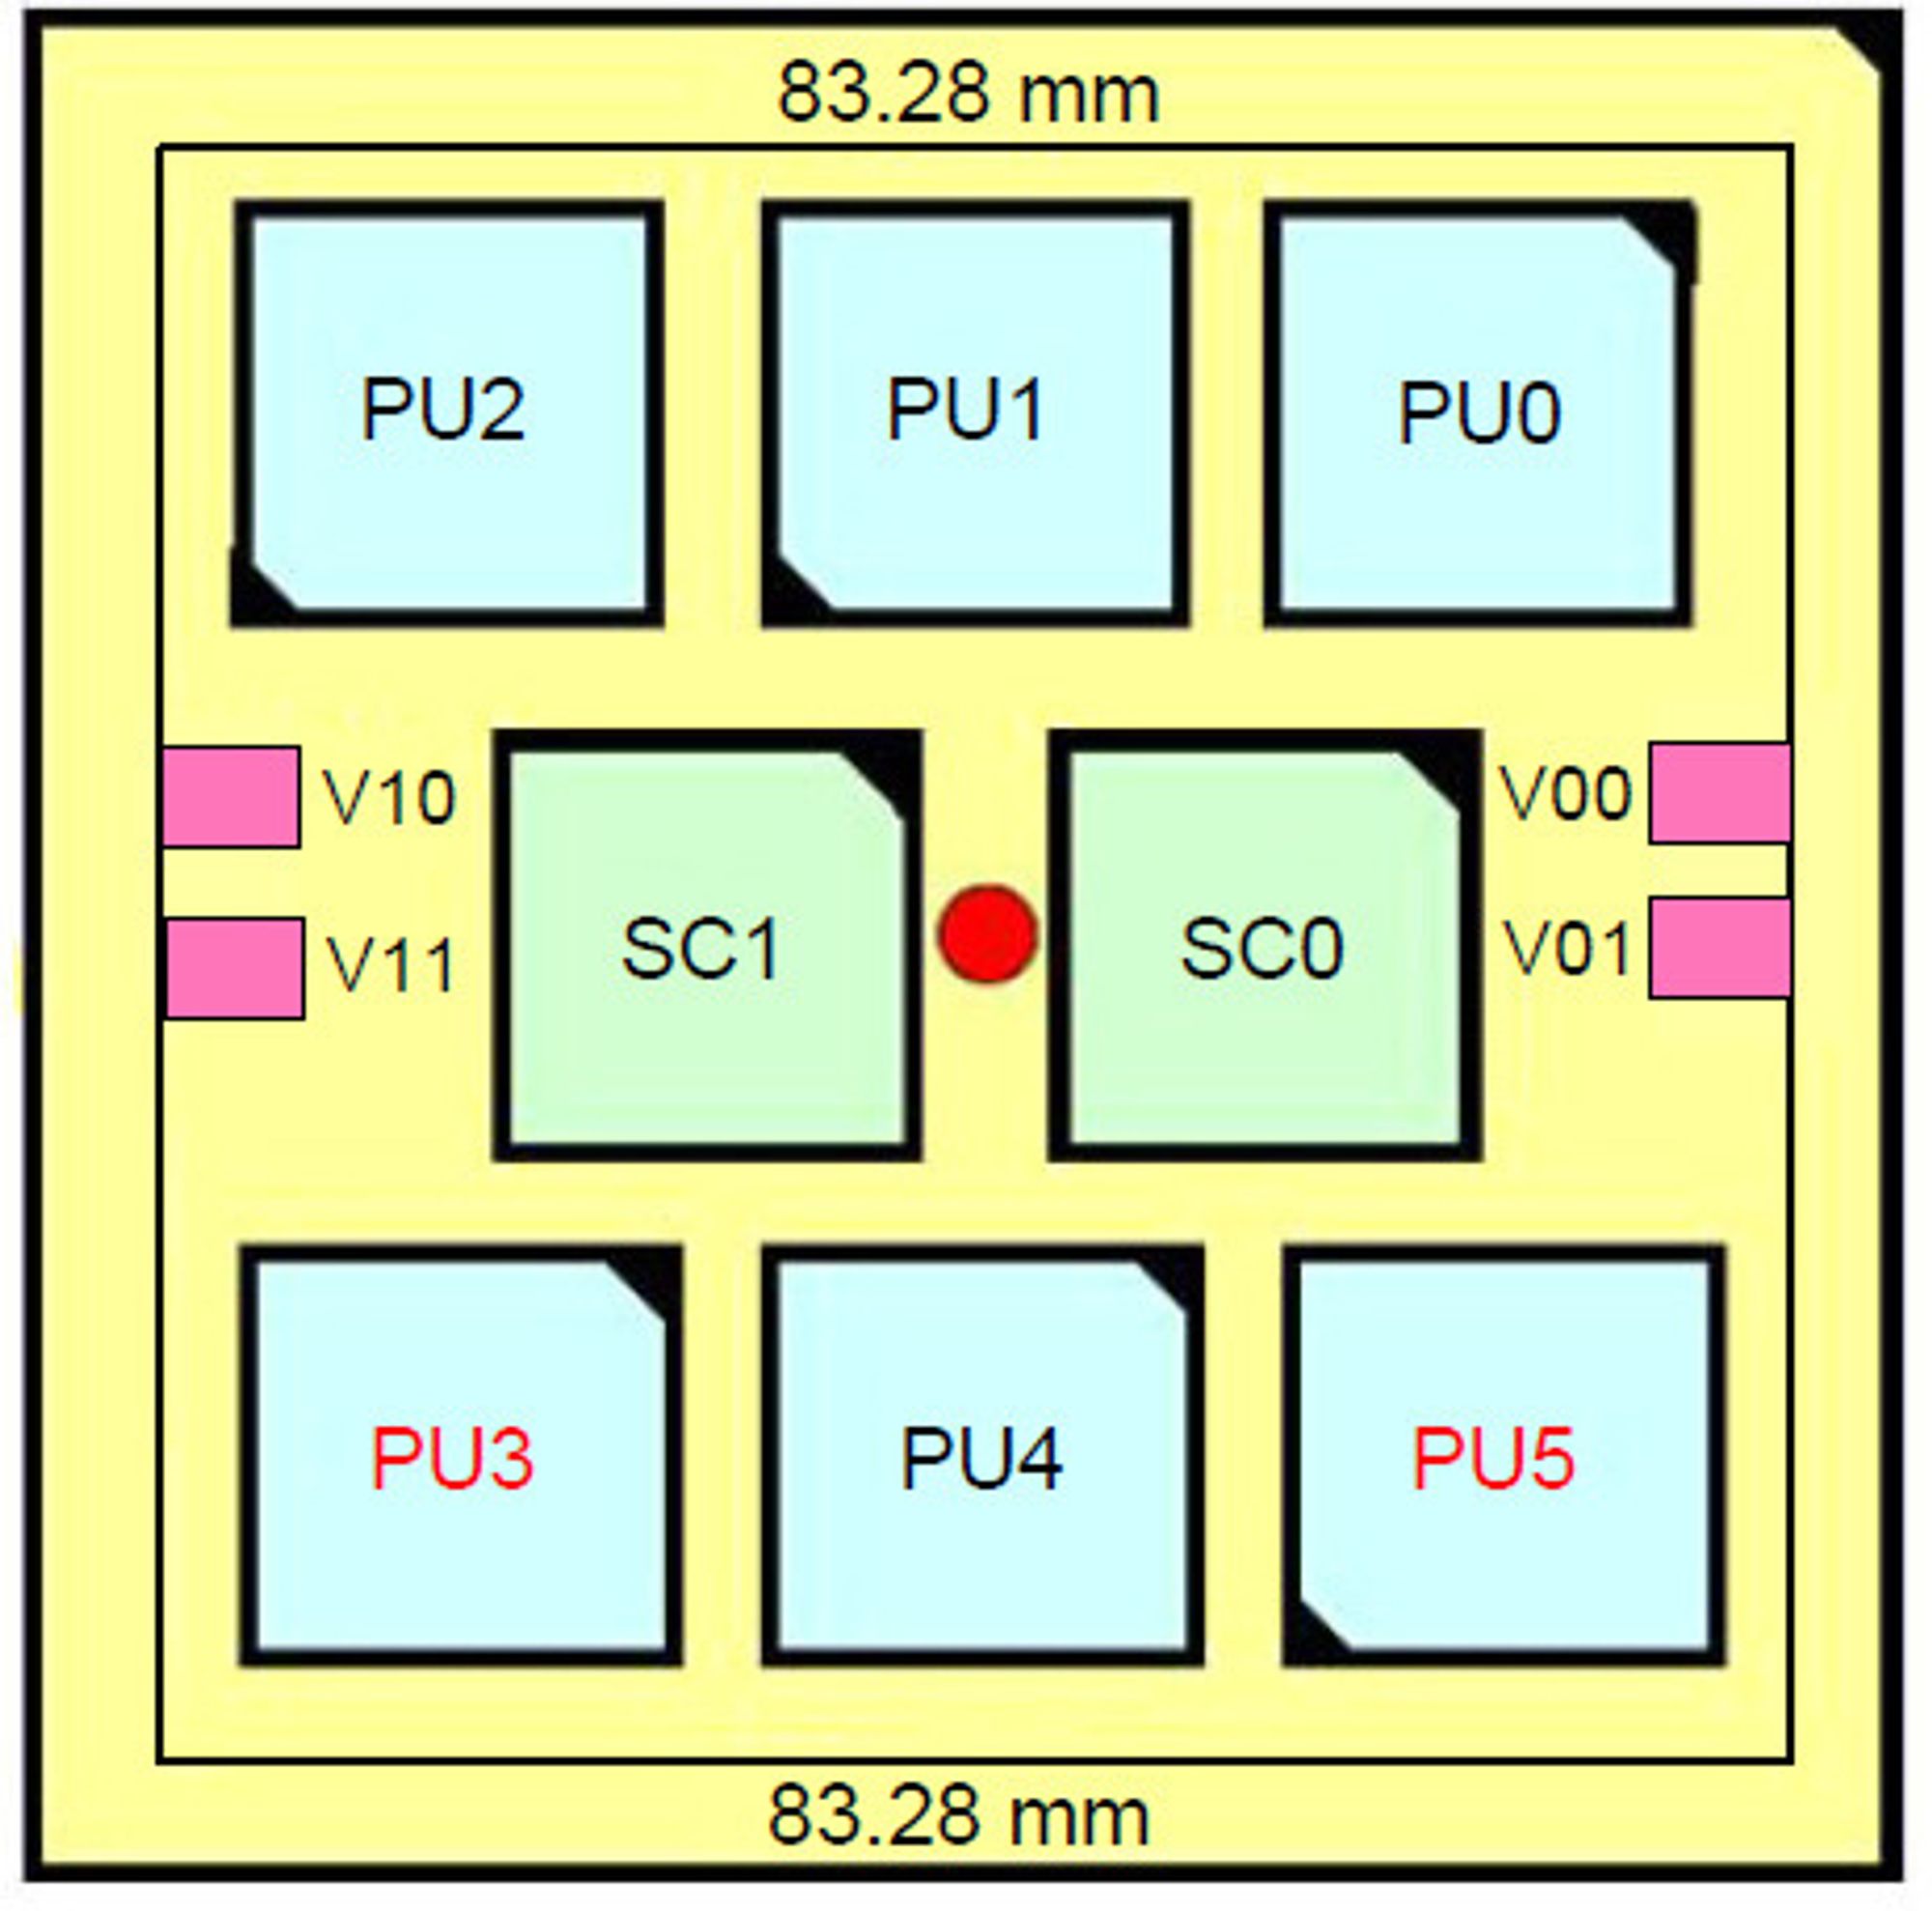 Brikkemodul med seks IBM z196-prosessorer (PUx) og to lagringskontrollere (SCx). Det delte L4 cacheminne finnes i SC0 og SC1.